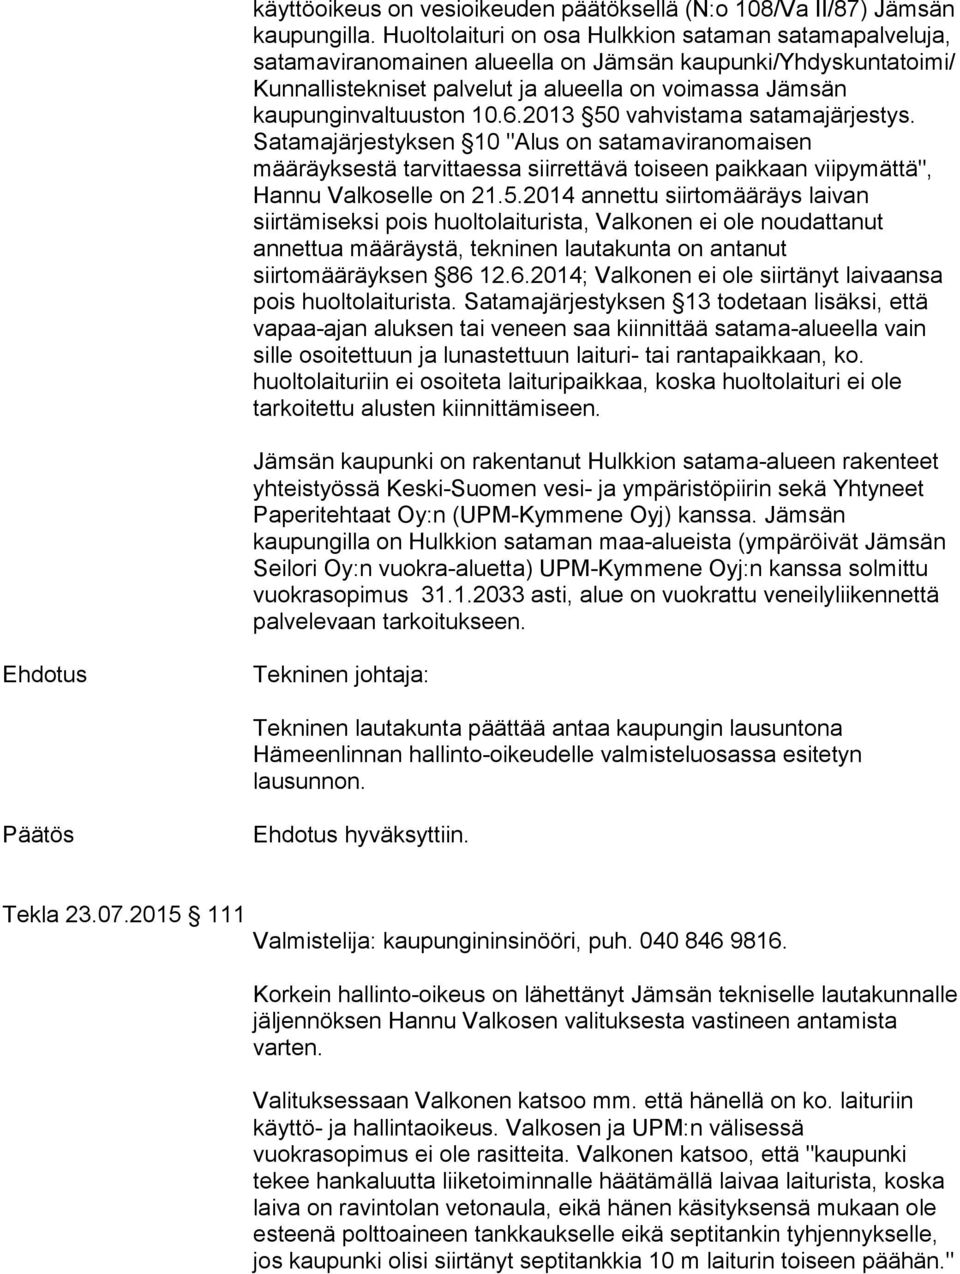 6.2013 50 vahvistama satamajärjestys. Satamajärjestyksen 10 "Alus on satamaviranomaisen määräyksestä tarvittaessa siirrettävä toiseen paikkaan viipymättä", Hannu Valkoselle on 21.5.2014 annettu siirtomääräys laivan siirtämiseksi pois huoltolaiturista, Valkonen ei ole noudattanut annettua määräystä, tekninen lautakunta on antanut siirtomääräyksen 86 12.